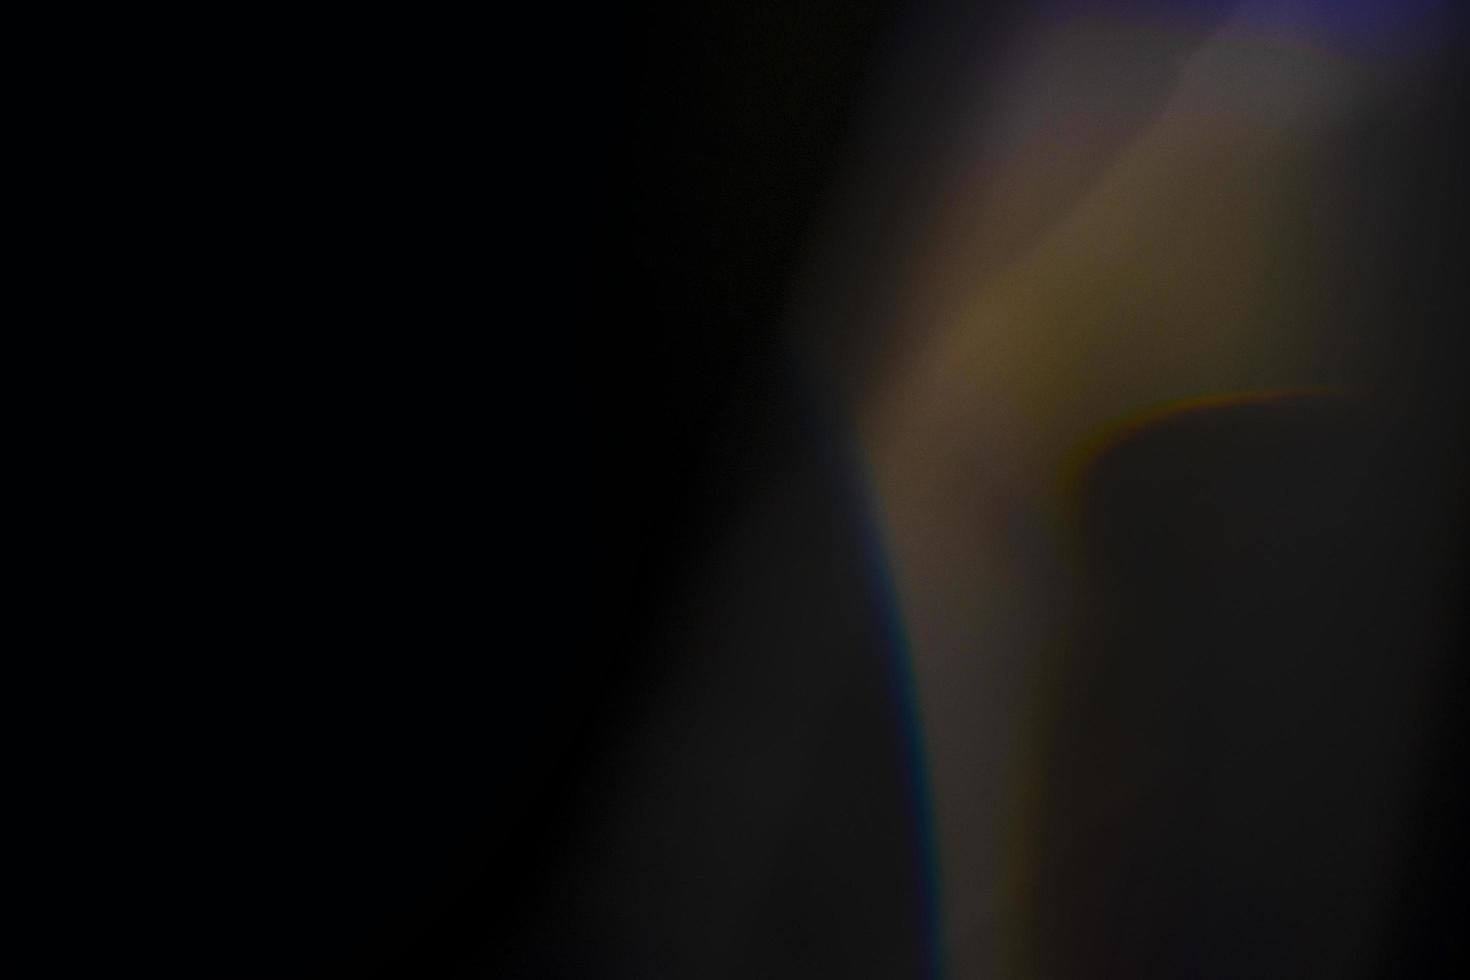 Kristall-Lichtleckeffekt für Foto-Overlay. Prisma Lens Flare Bokeh abstrakt mit Glühen, bunten und magischen Lichtern auf schwarzem Hintergrund. foto